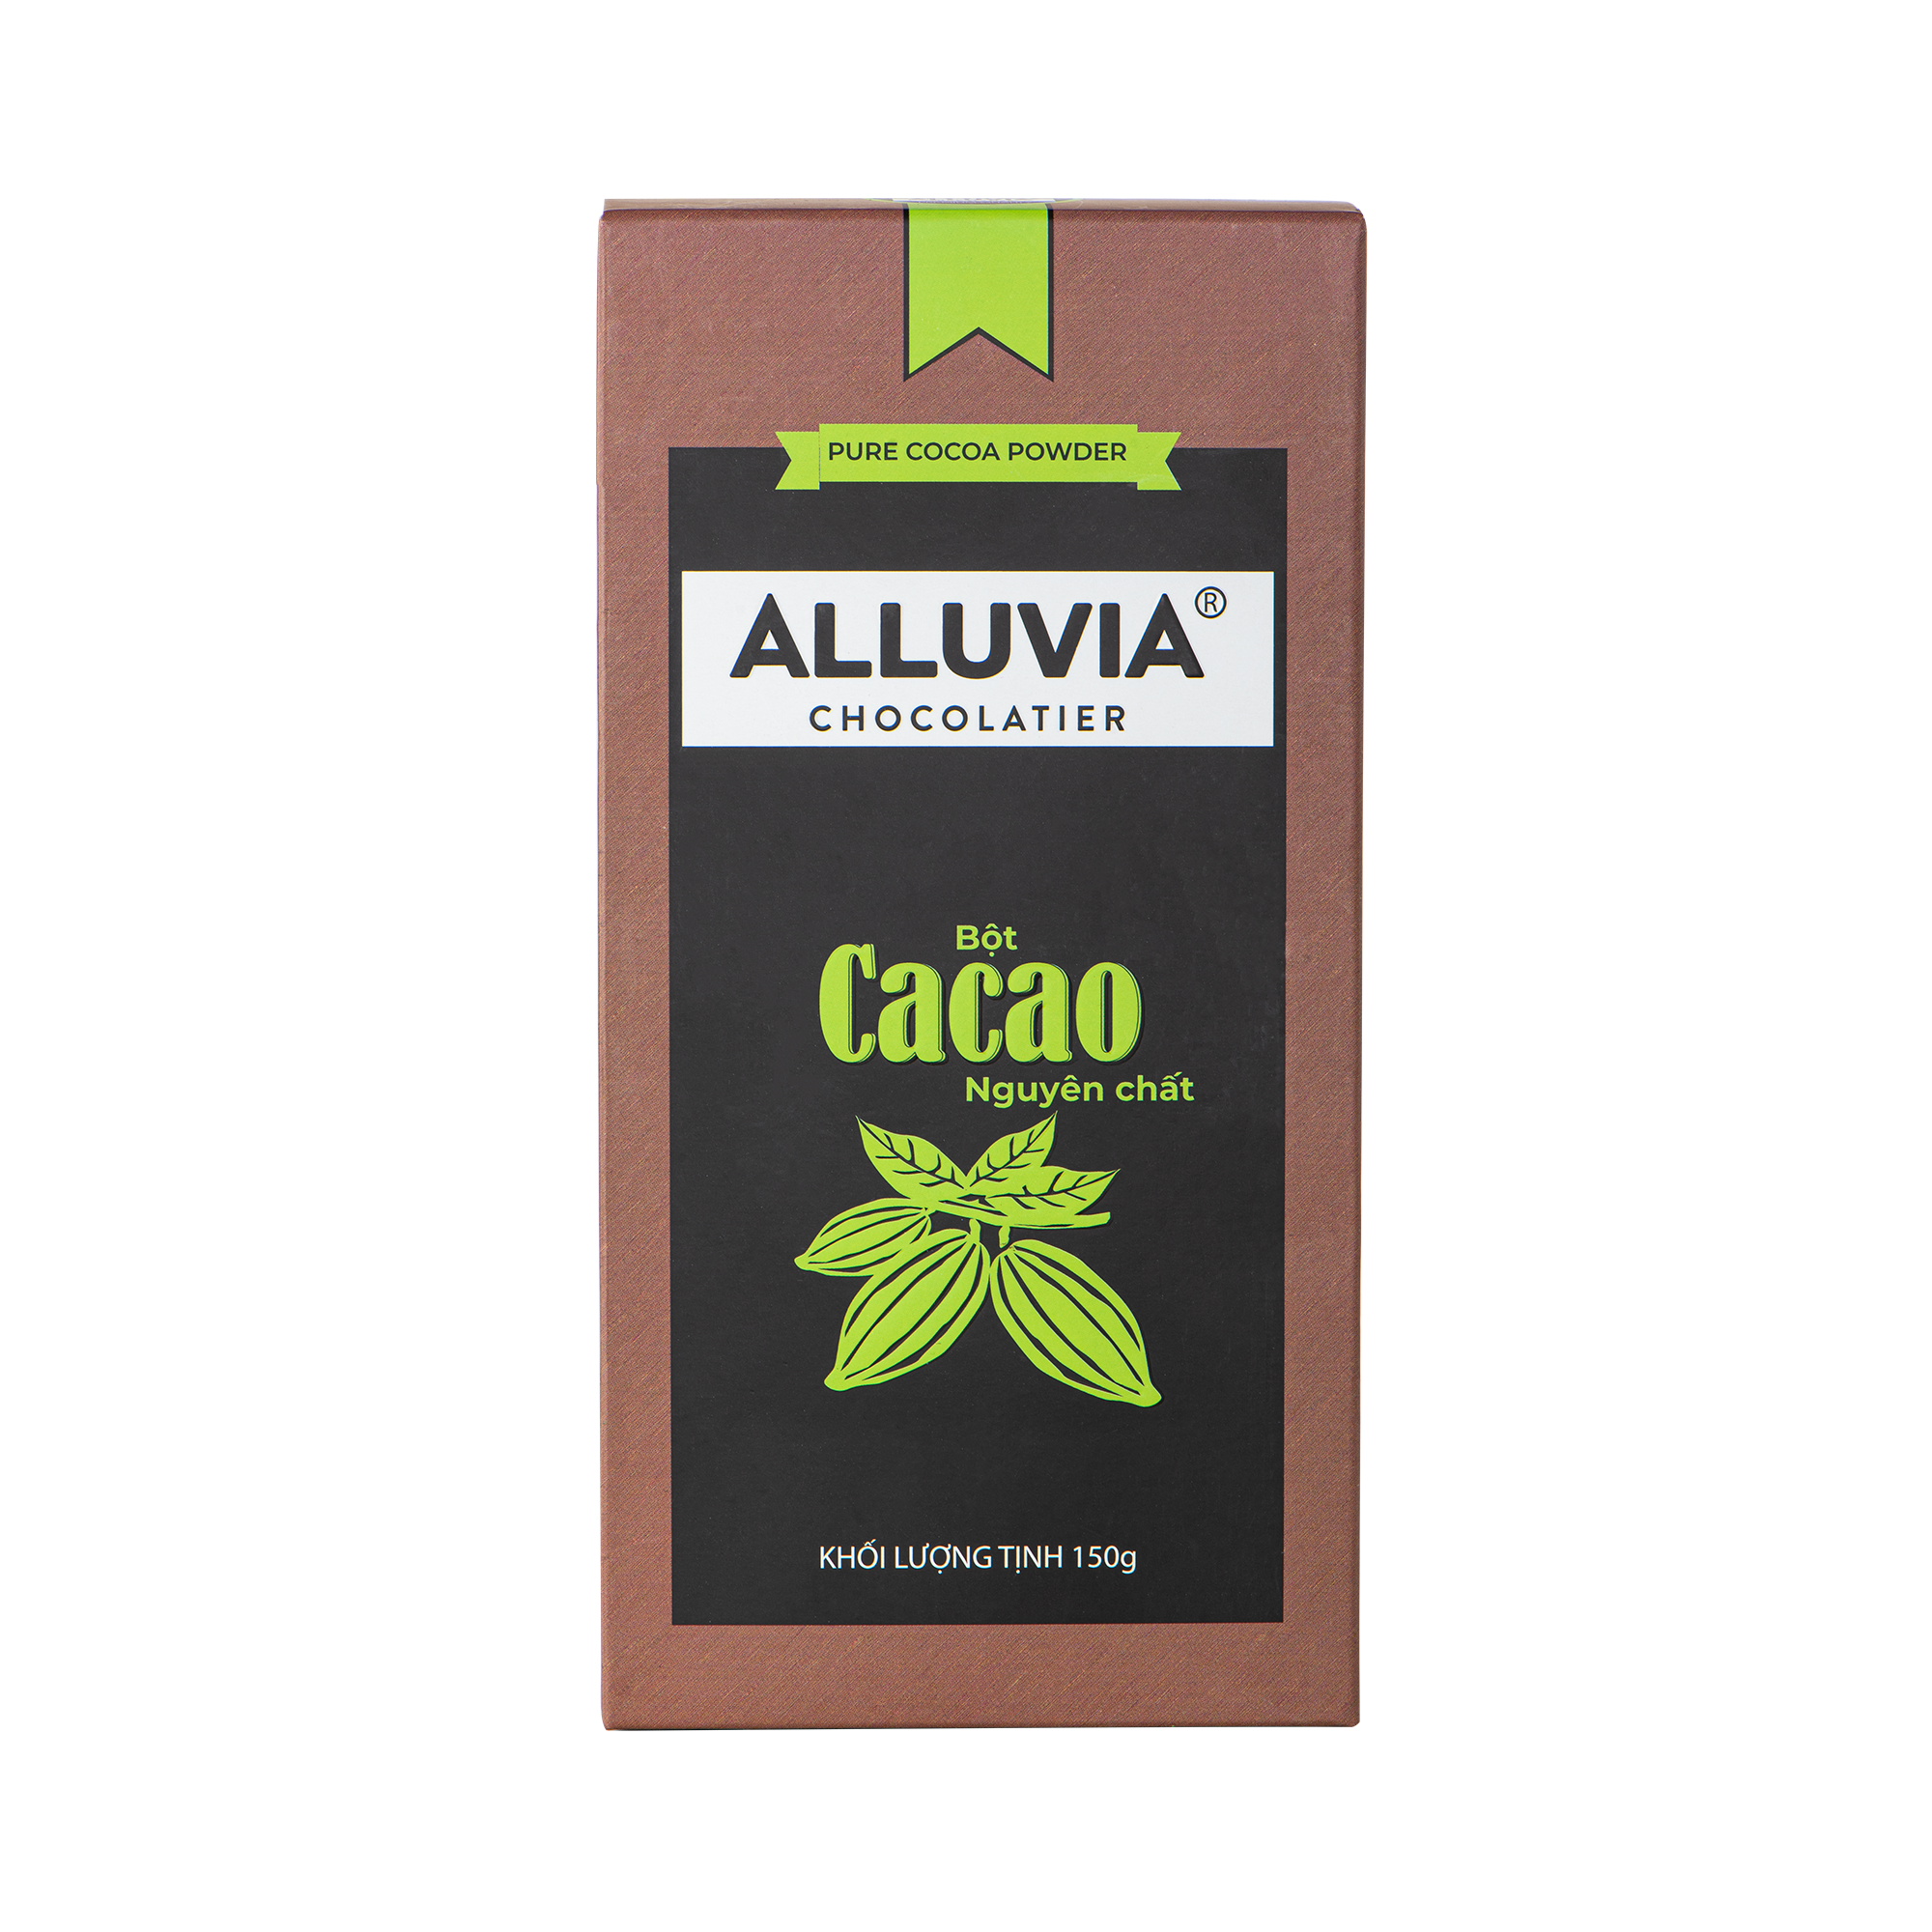 Alluvia Pure Cocoa Powder (150g)